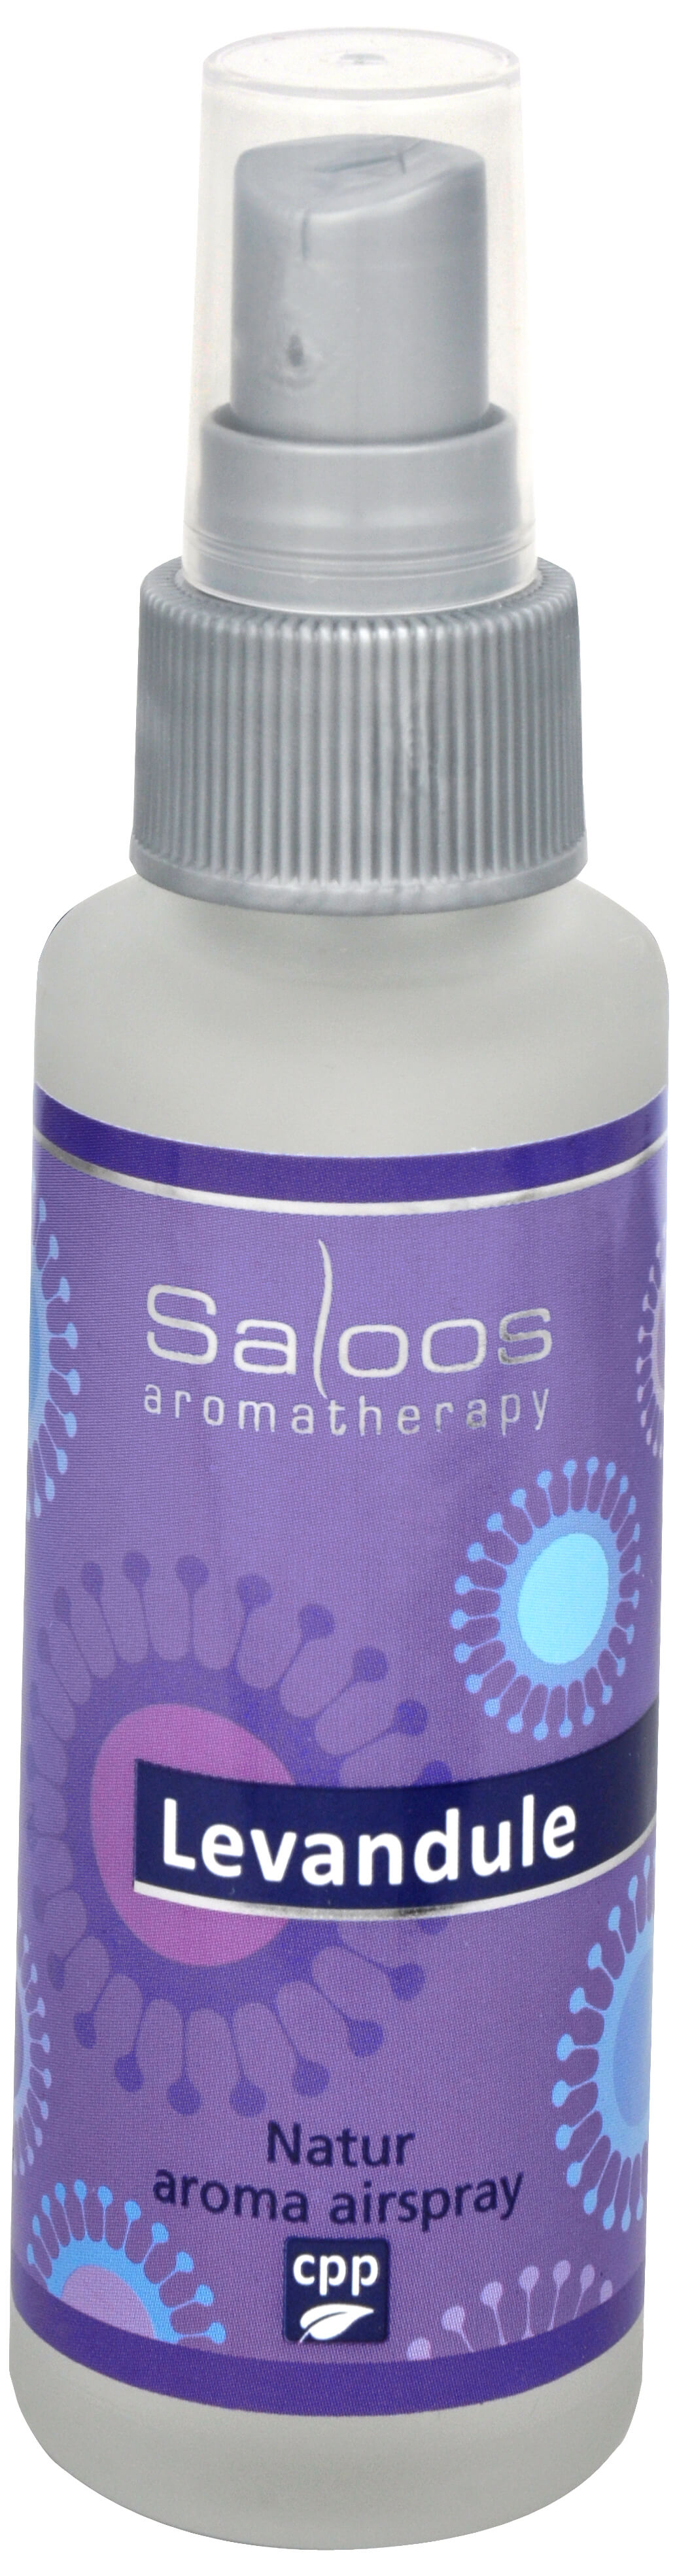 Zobrazit detail výrobku Saloos Natur aroma airspray - Levandule (přírodní osvěžovač vzduchu) 50 ml